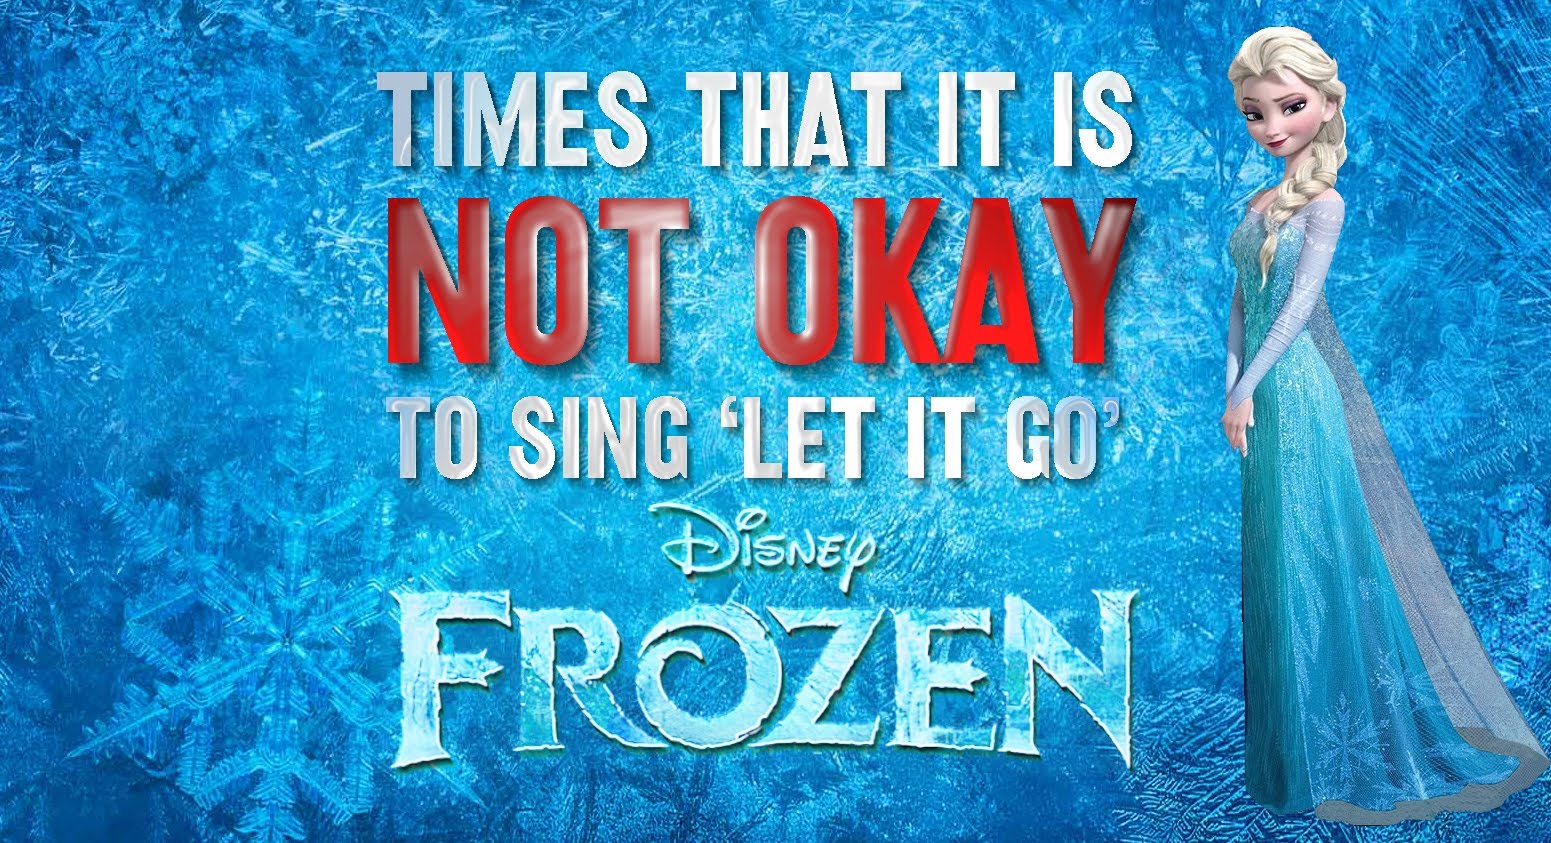 Frozen Parody Frozen Parody Frozen Parody Frozen Parody Frozen Parody Frozen Parody Frozen Parody 4